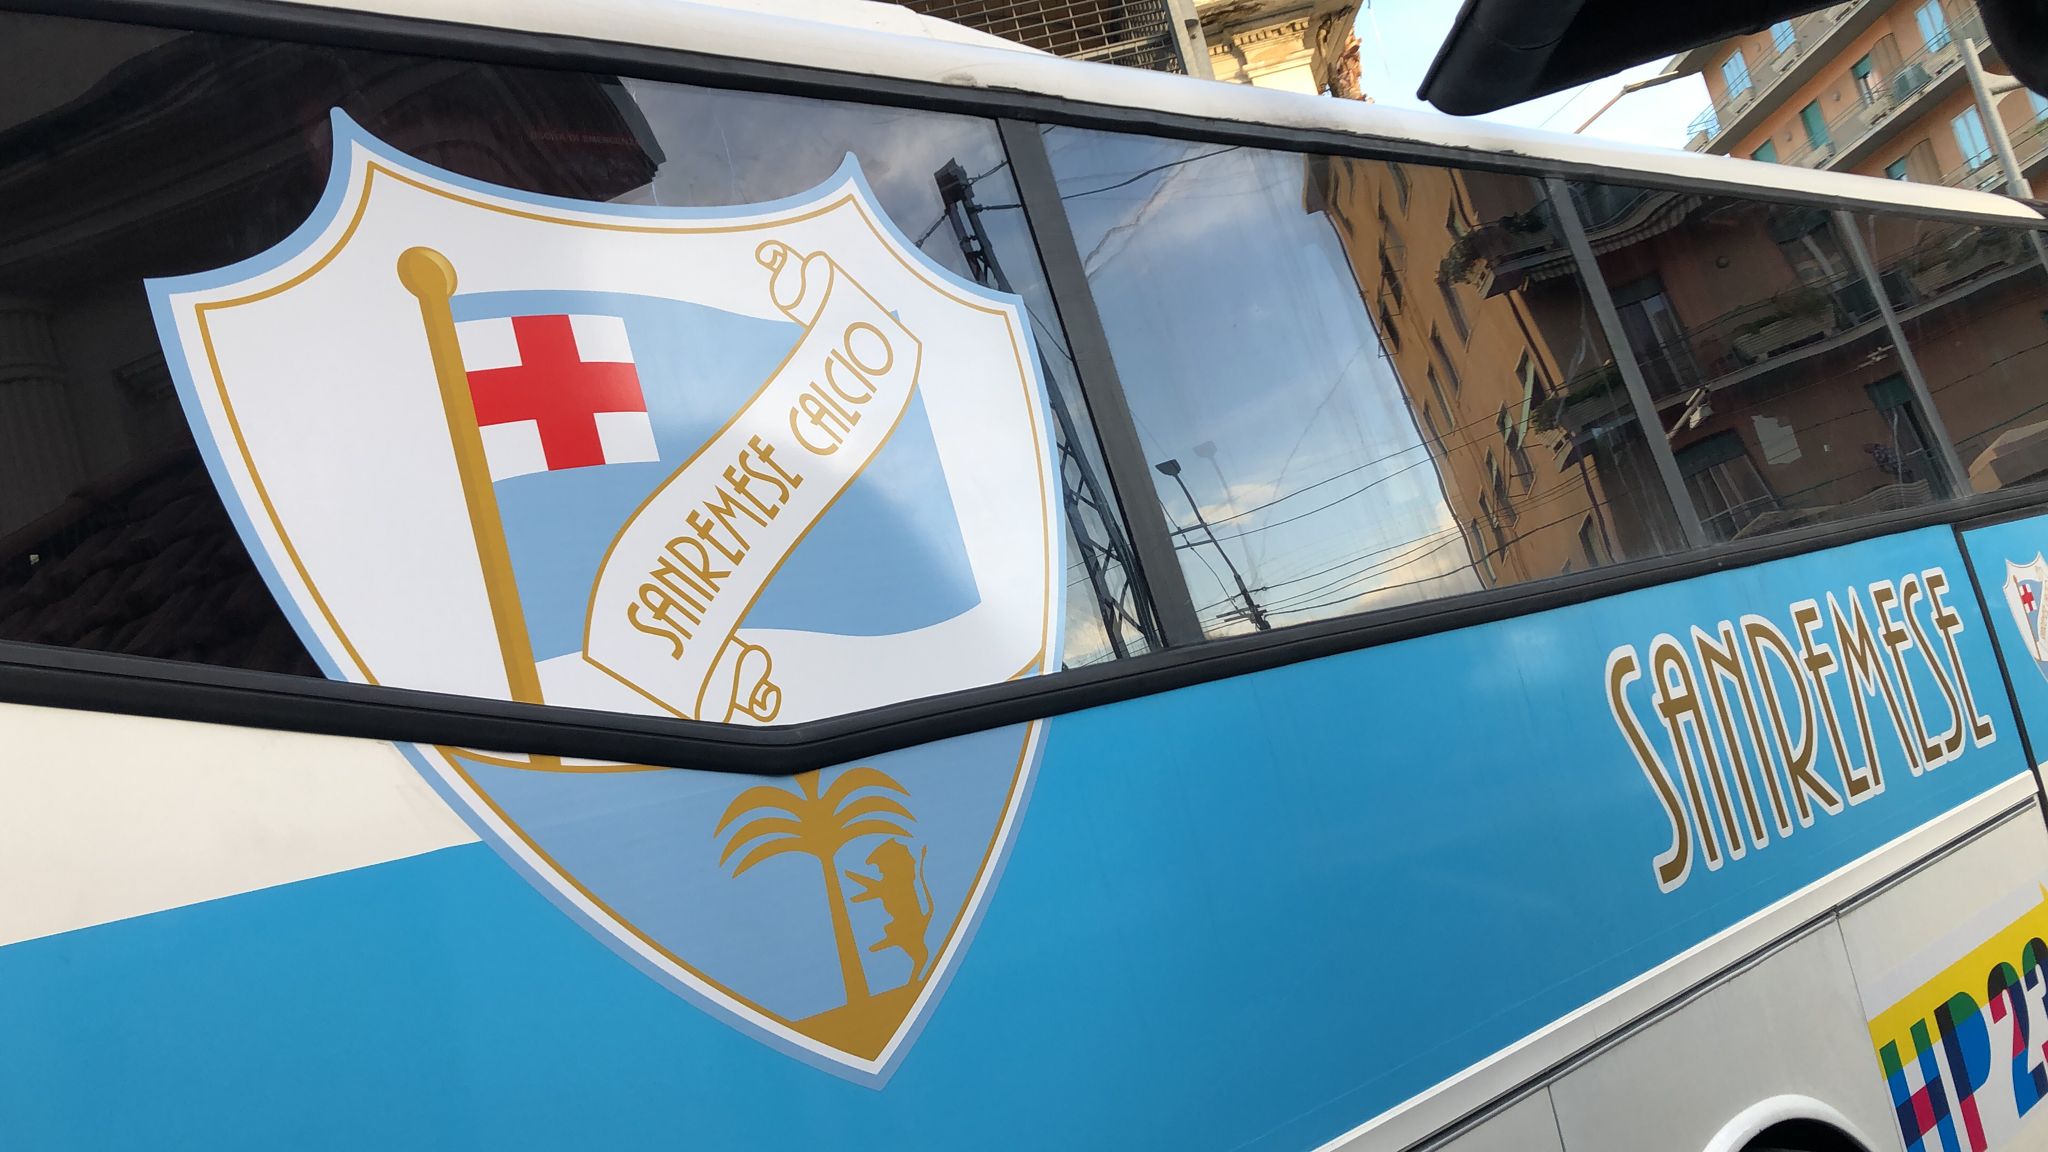 Sanremese Calcio personalizzazione bus